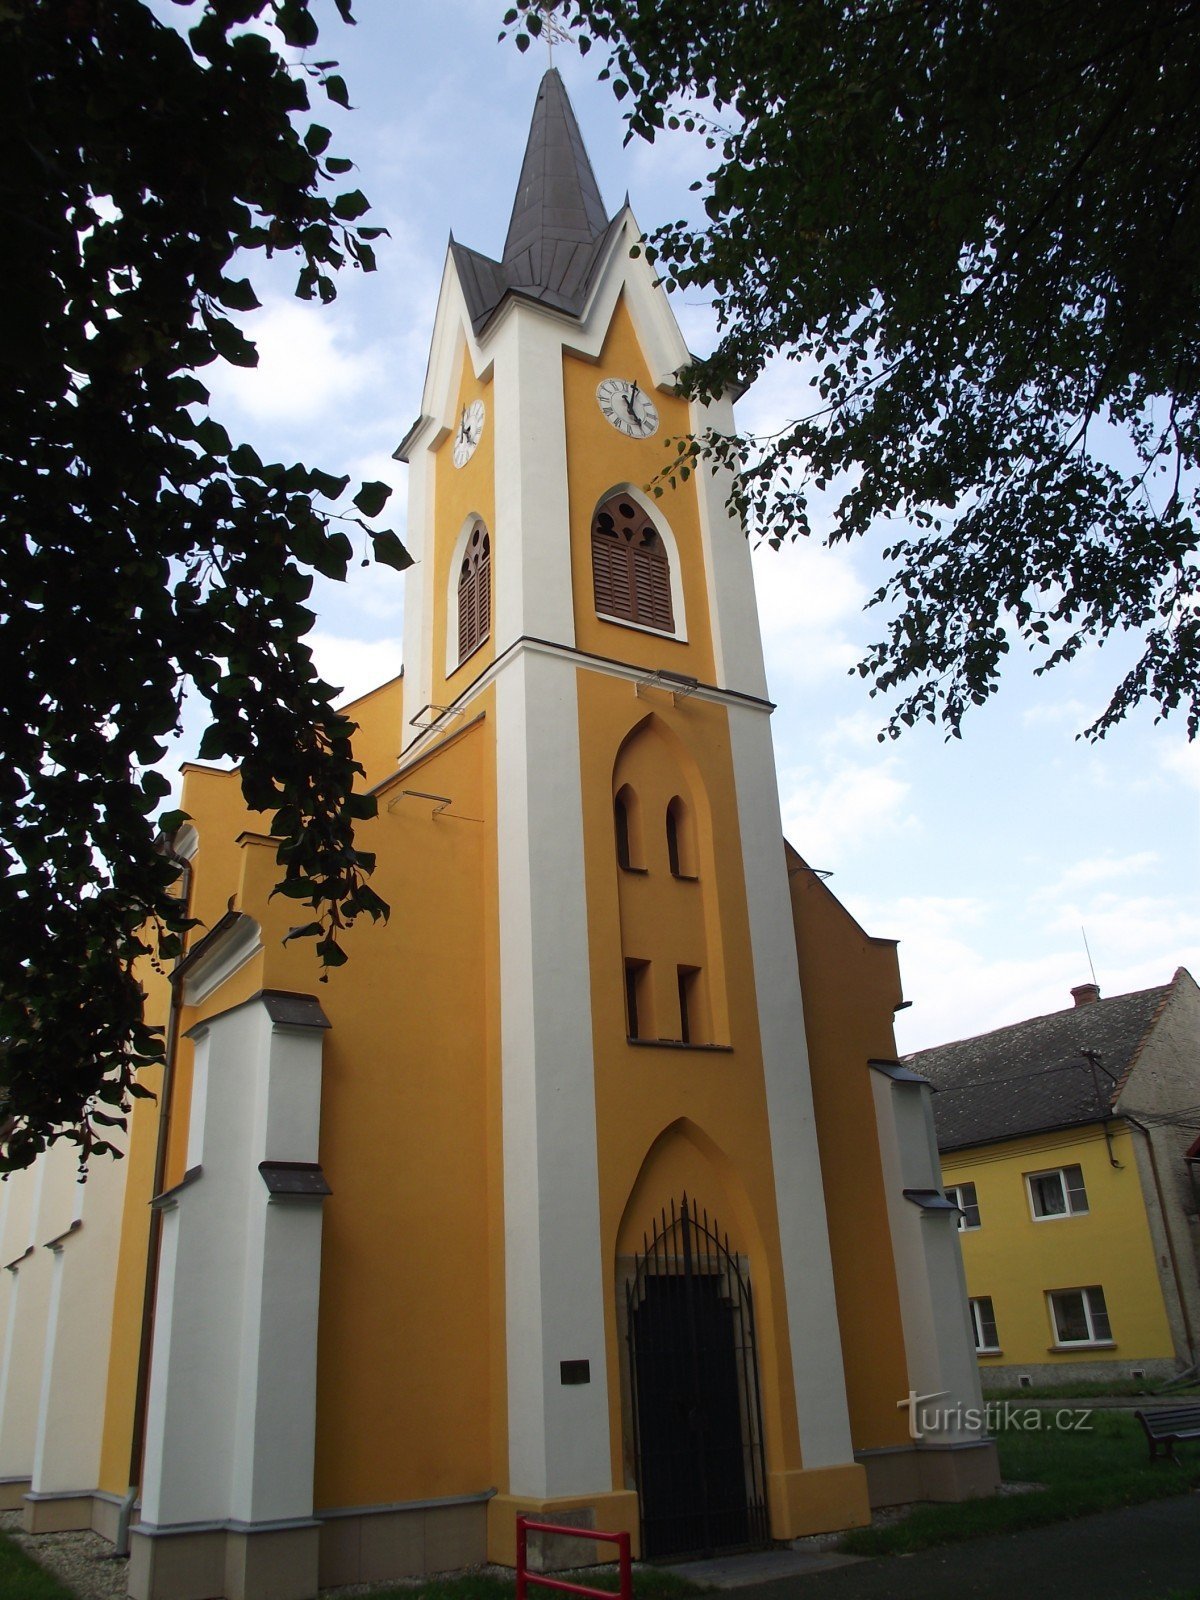 Želechovice (Uničov közelében) - a Szent István-kápolna. Cirill és Metód